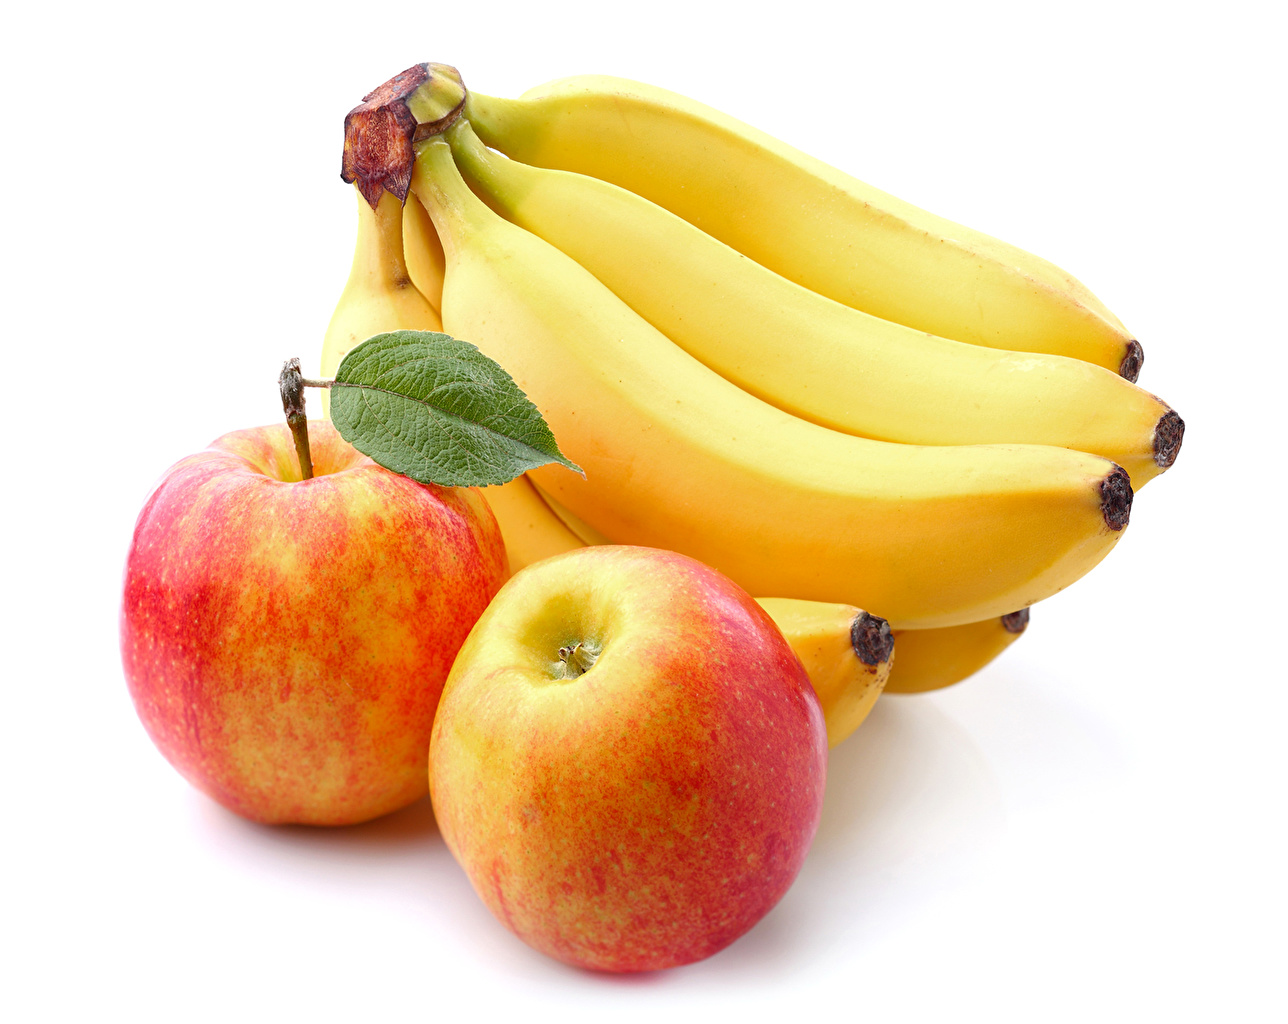 apple and banana